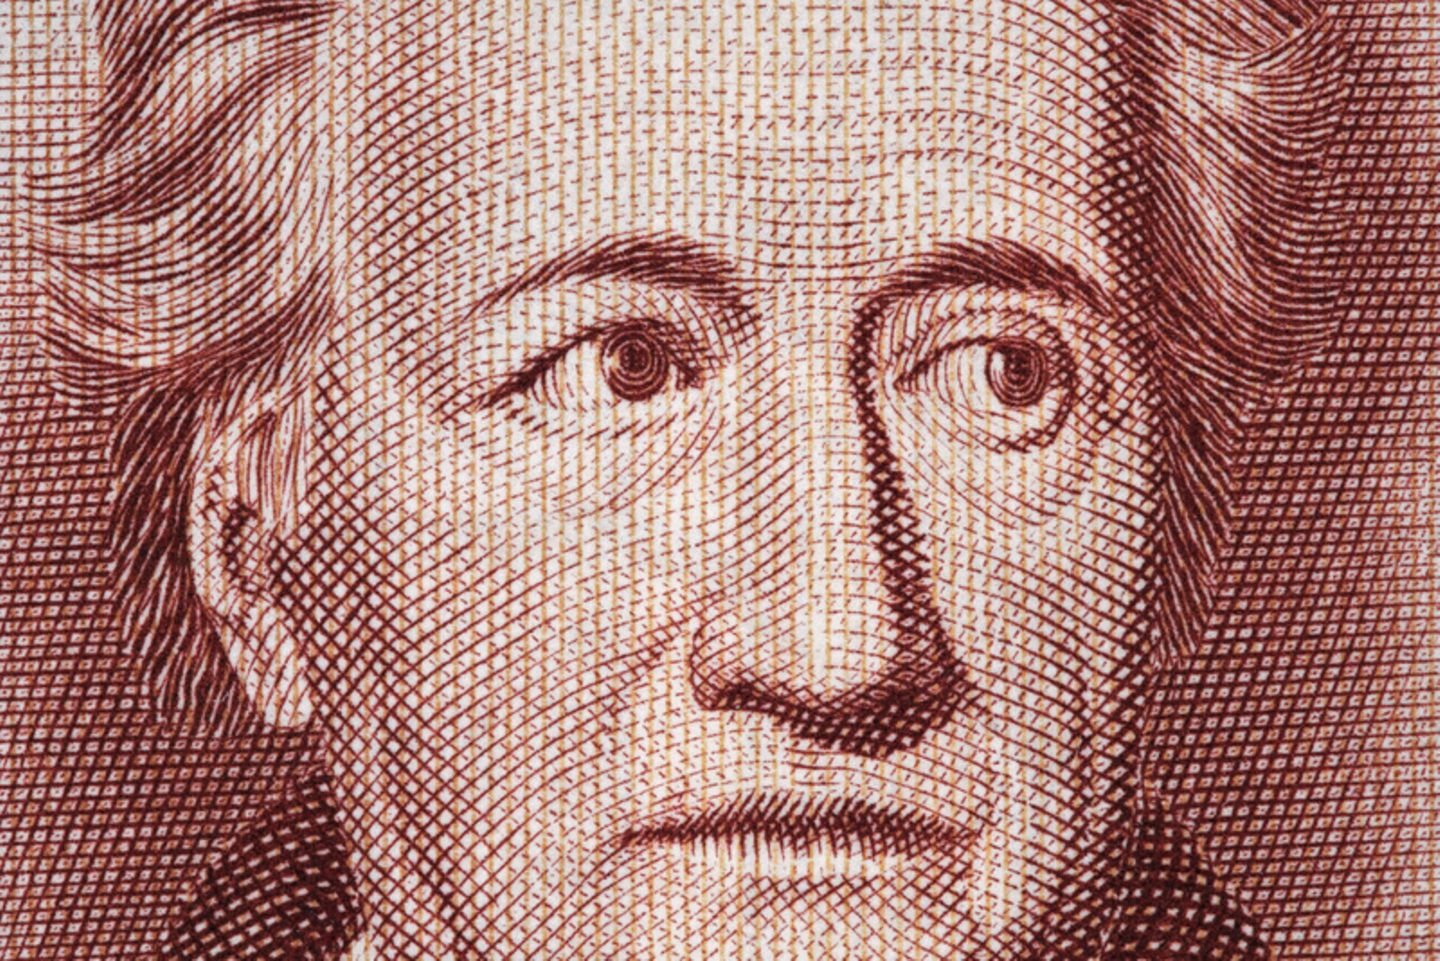 Johann Wolfgang Von Goethe Dichter Denker Druckeberger Geolino